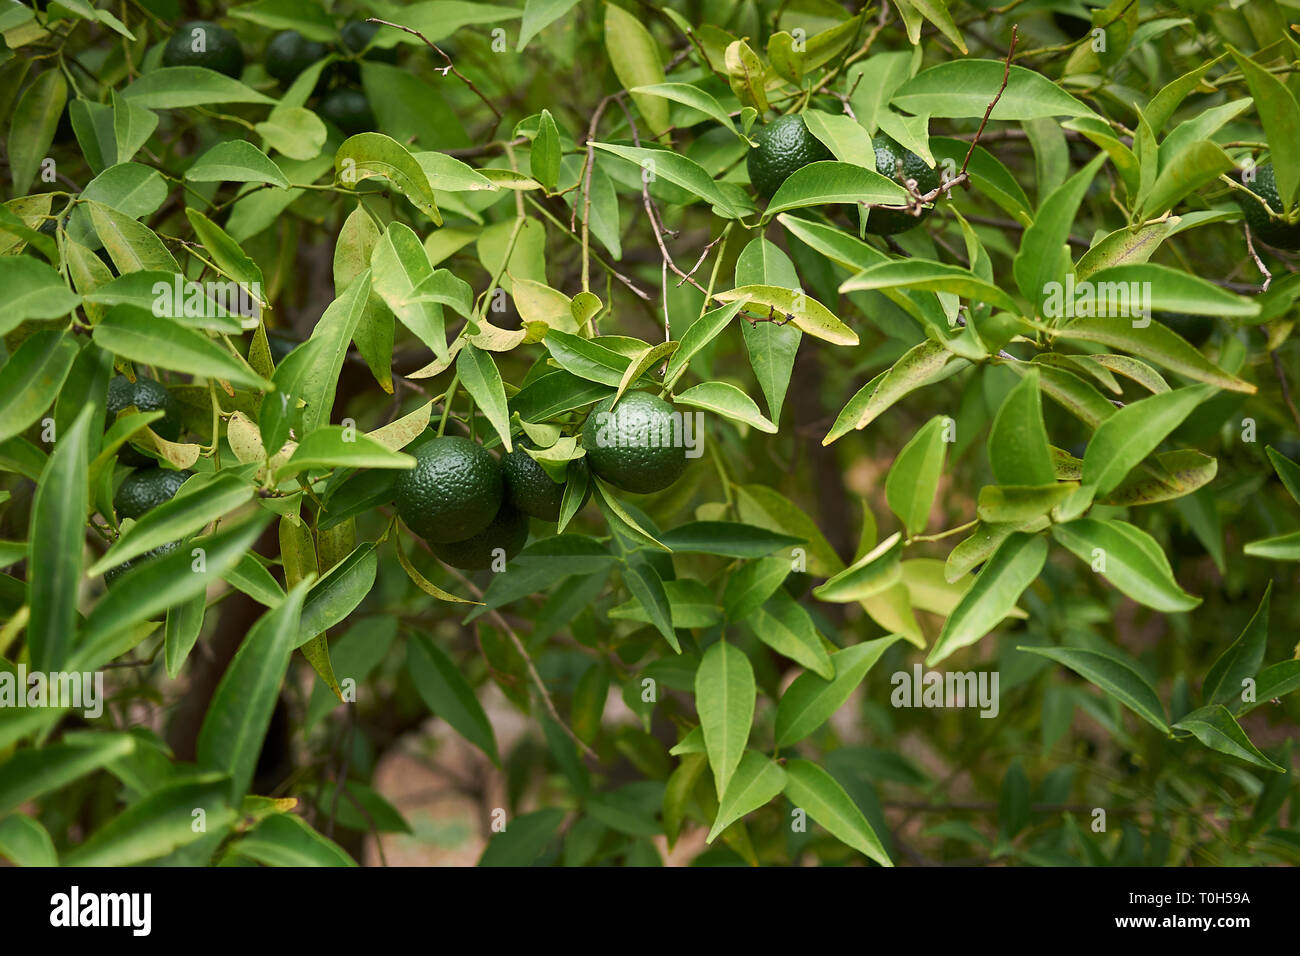 unripe fruit of Citrus reticulata tree Stock Photo